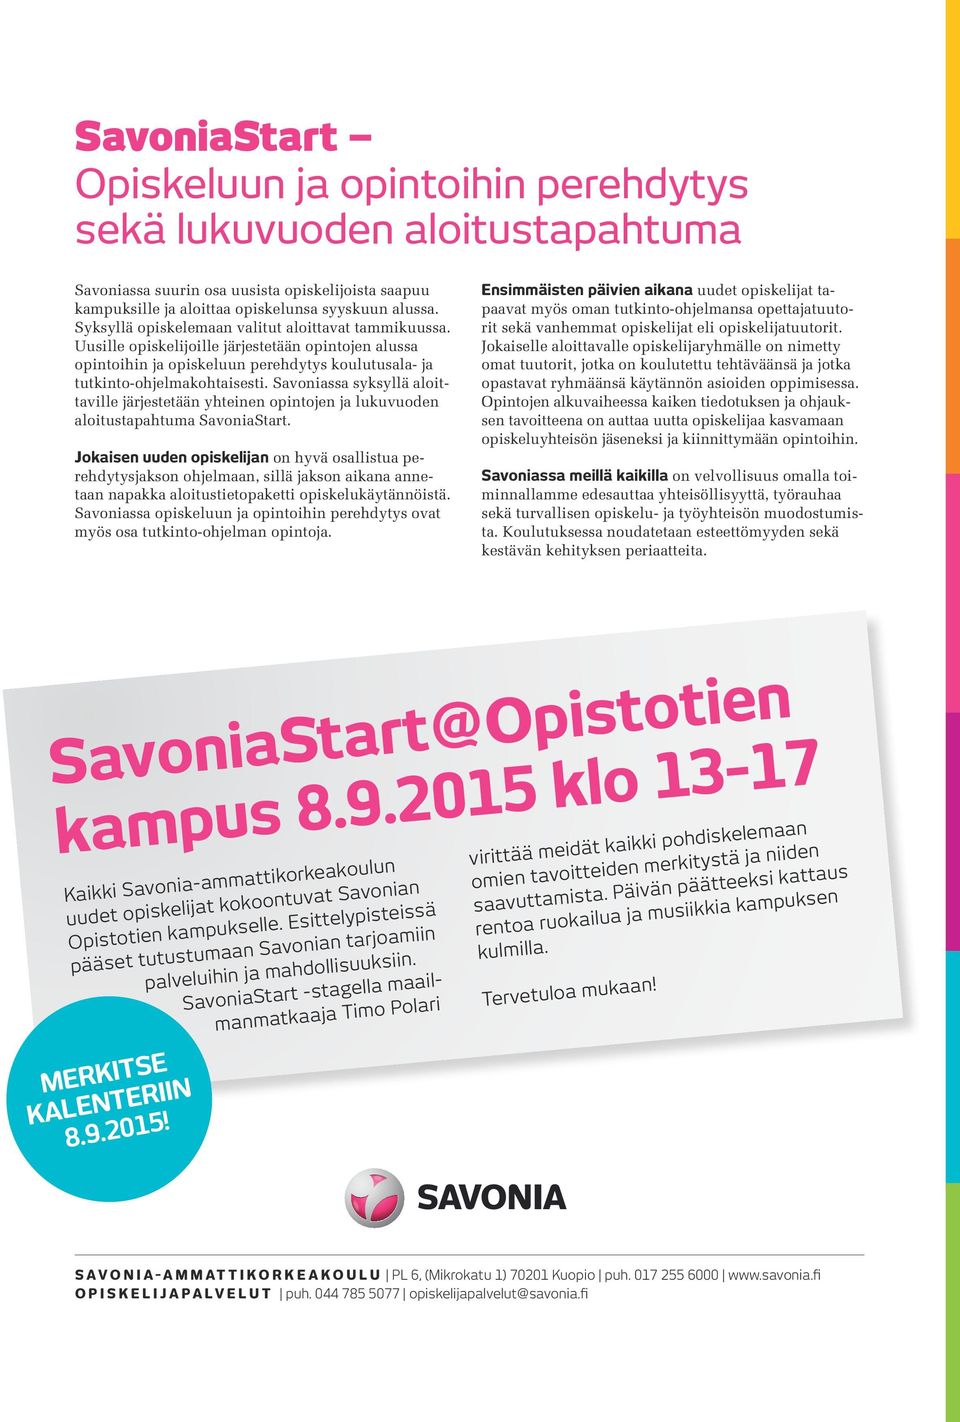 Savoniassa syksyllä aloittaville järjestetään yhteinen opintojen ja lukuvuoden aloitustapahtuma SavoniaStart.